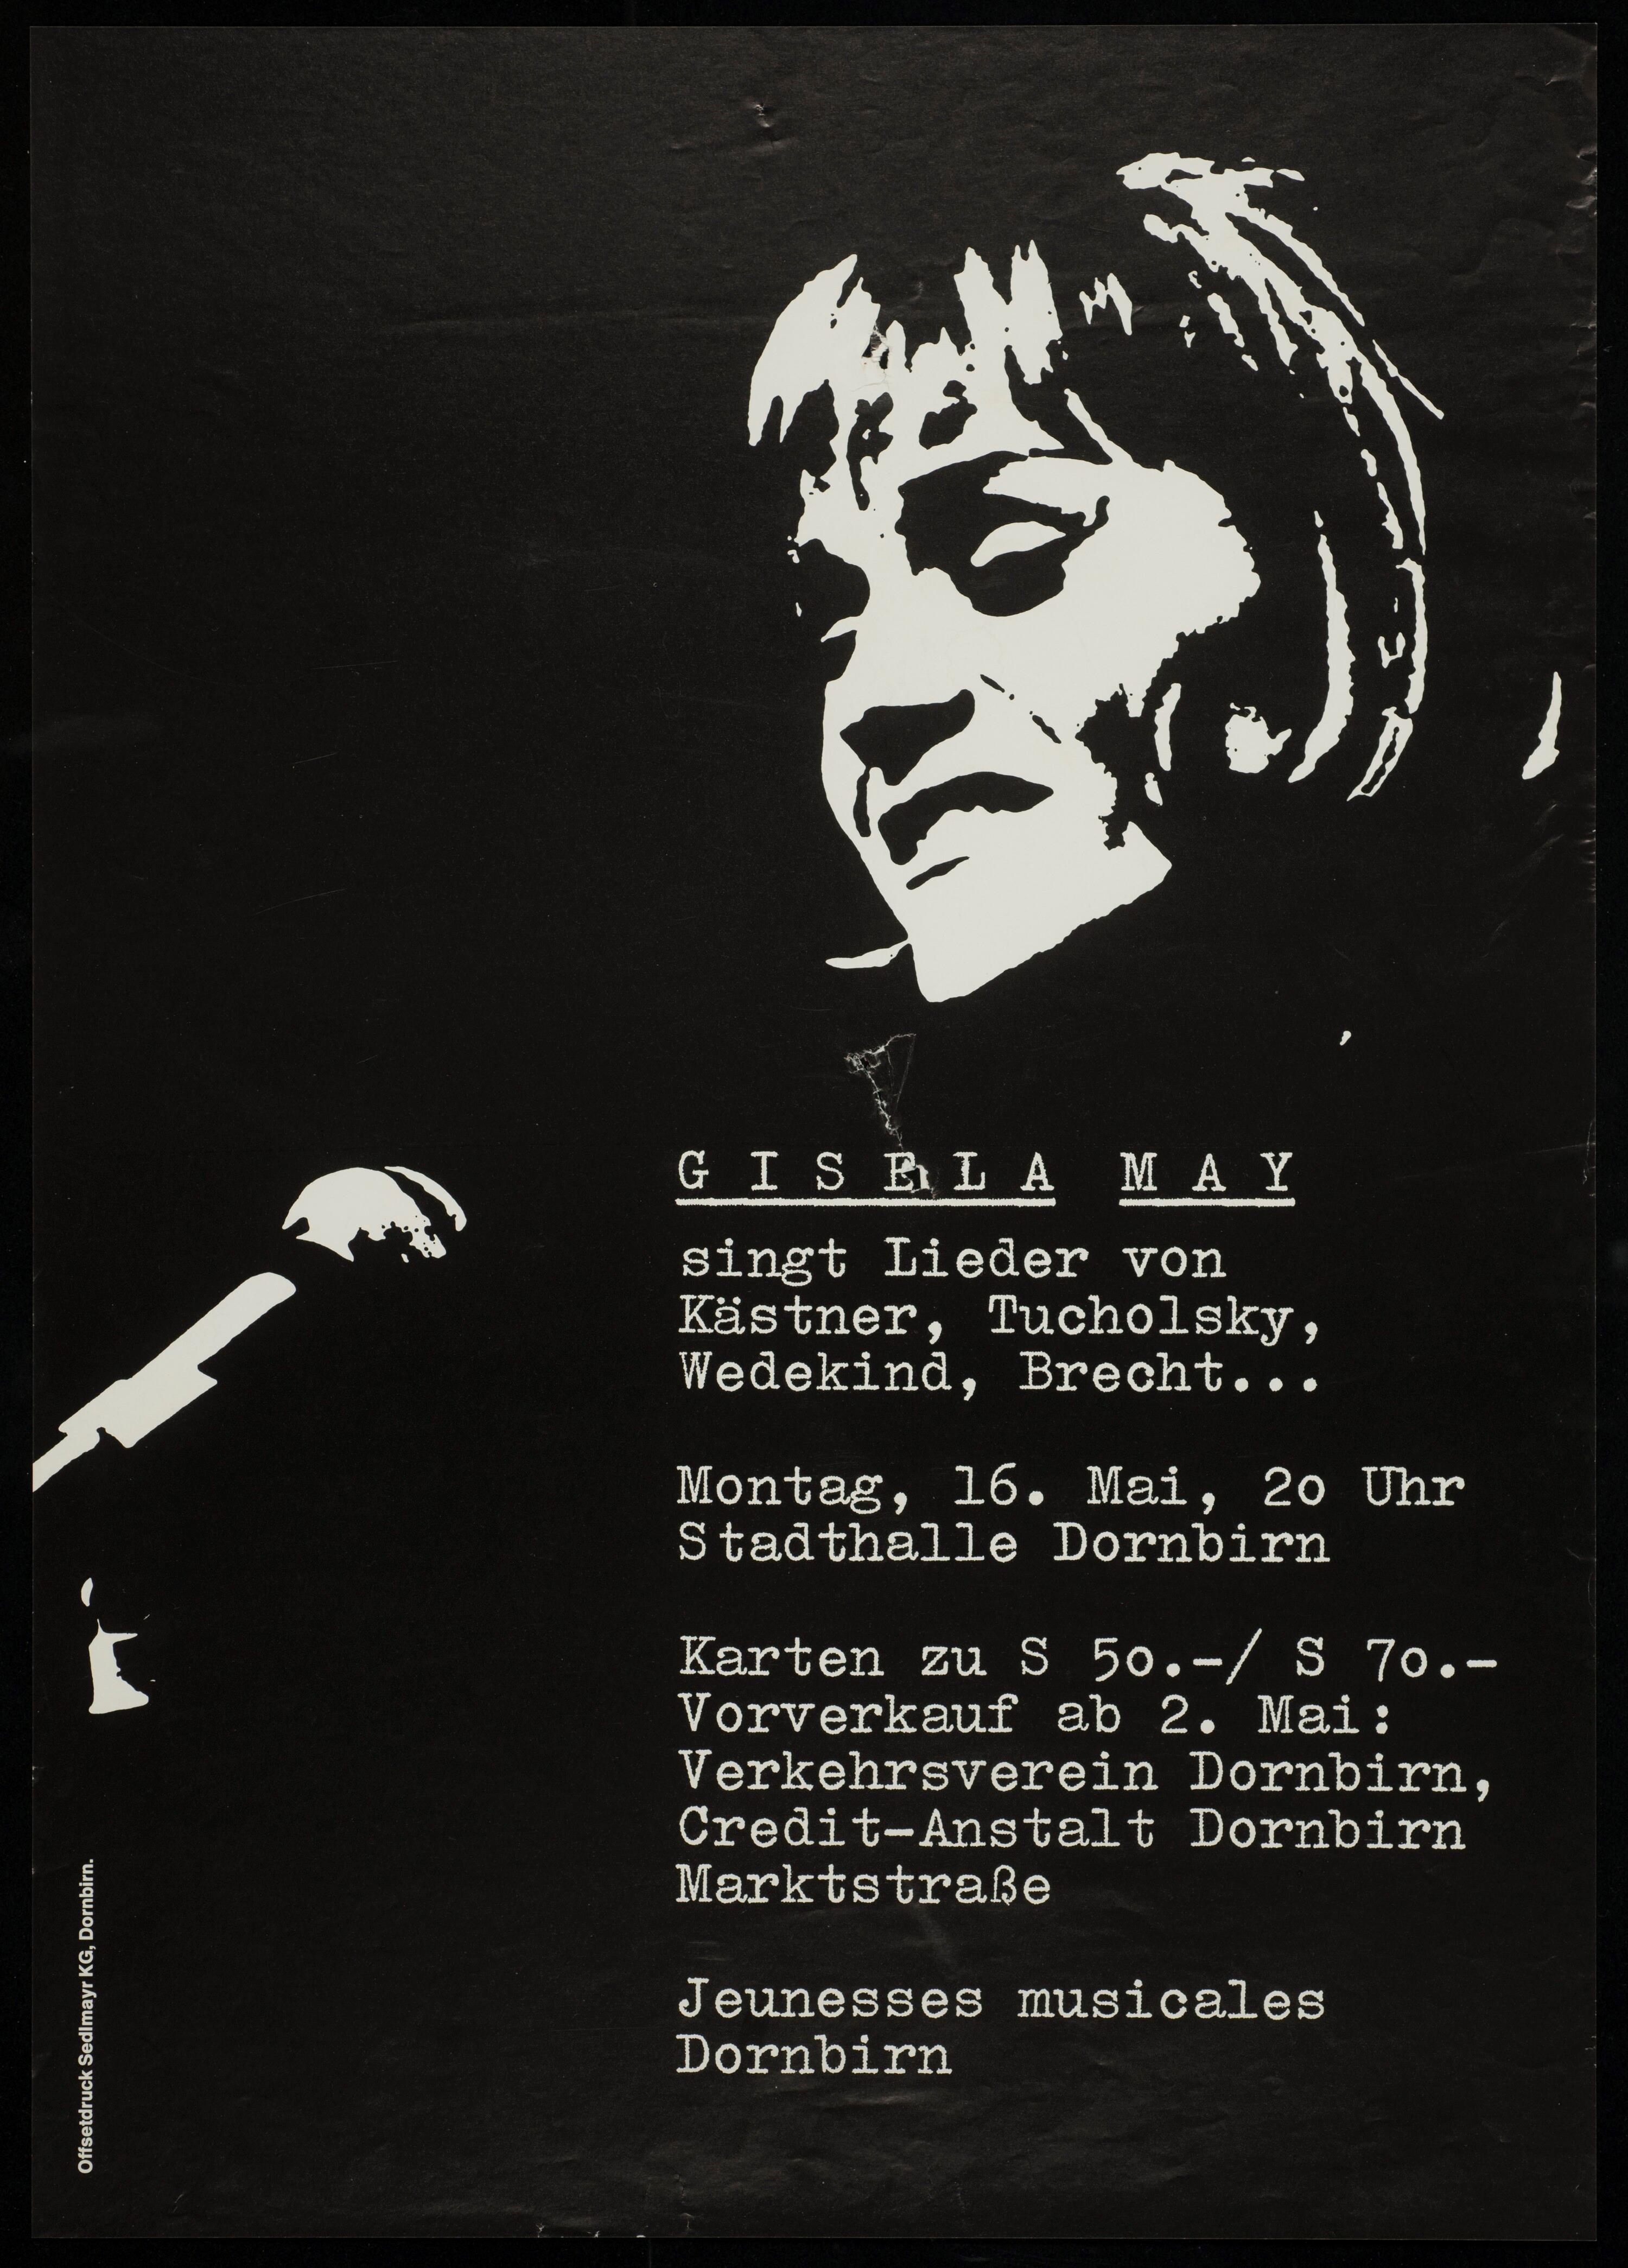 Gisela May singt Lieder von Kästner, Tucholsky, Wedekind, Brecht ...></div>


    <hr>
    <div class=